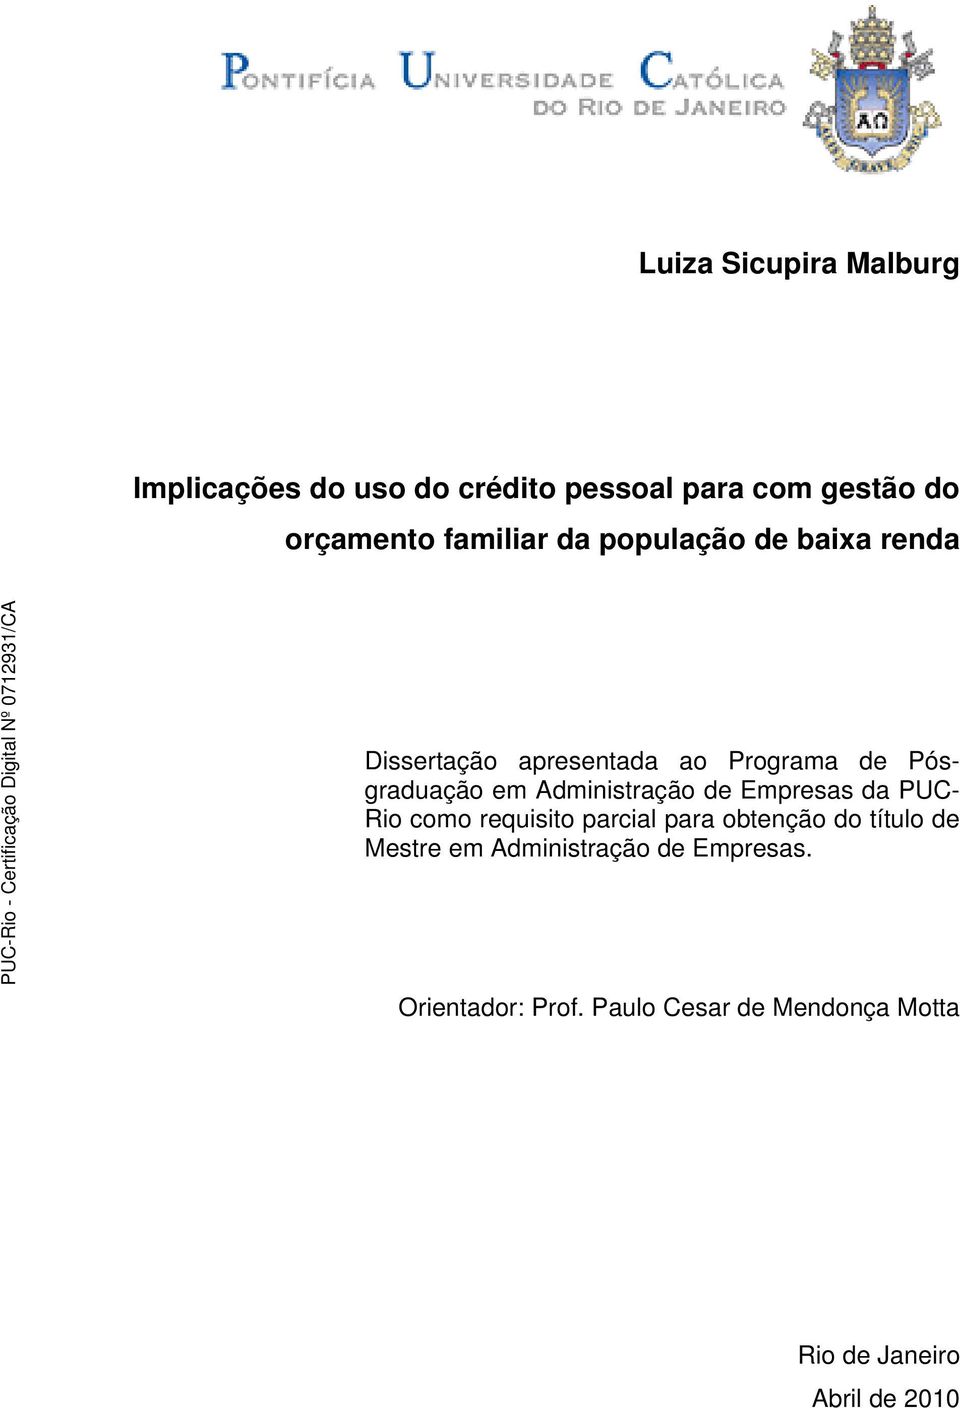 Administração de Empresas da PUC- Rio como requisito parcial para obtenção do título de Mestre